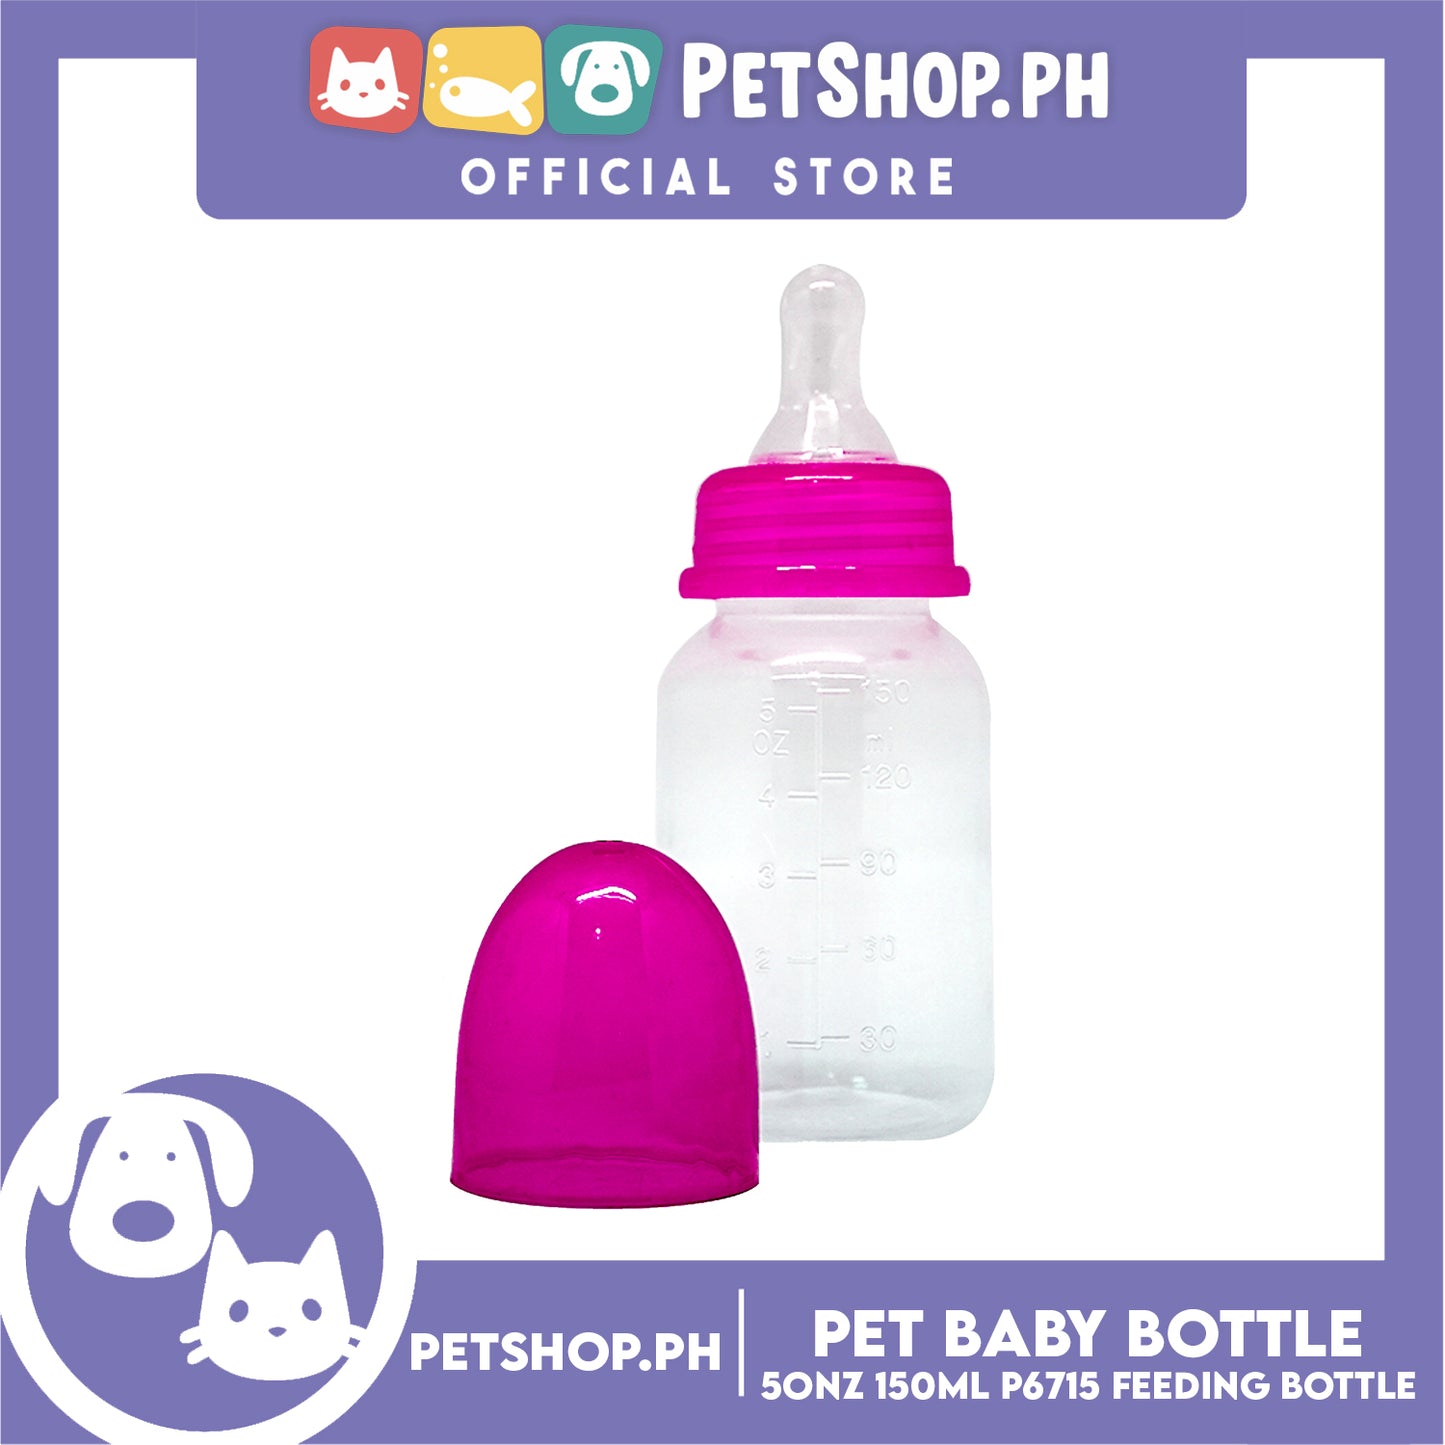 Pet Baby Bottle for Feeding Kittens and Puppies 5oz 150ml P6715- Feeding Bottle, Nursing Kit